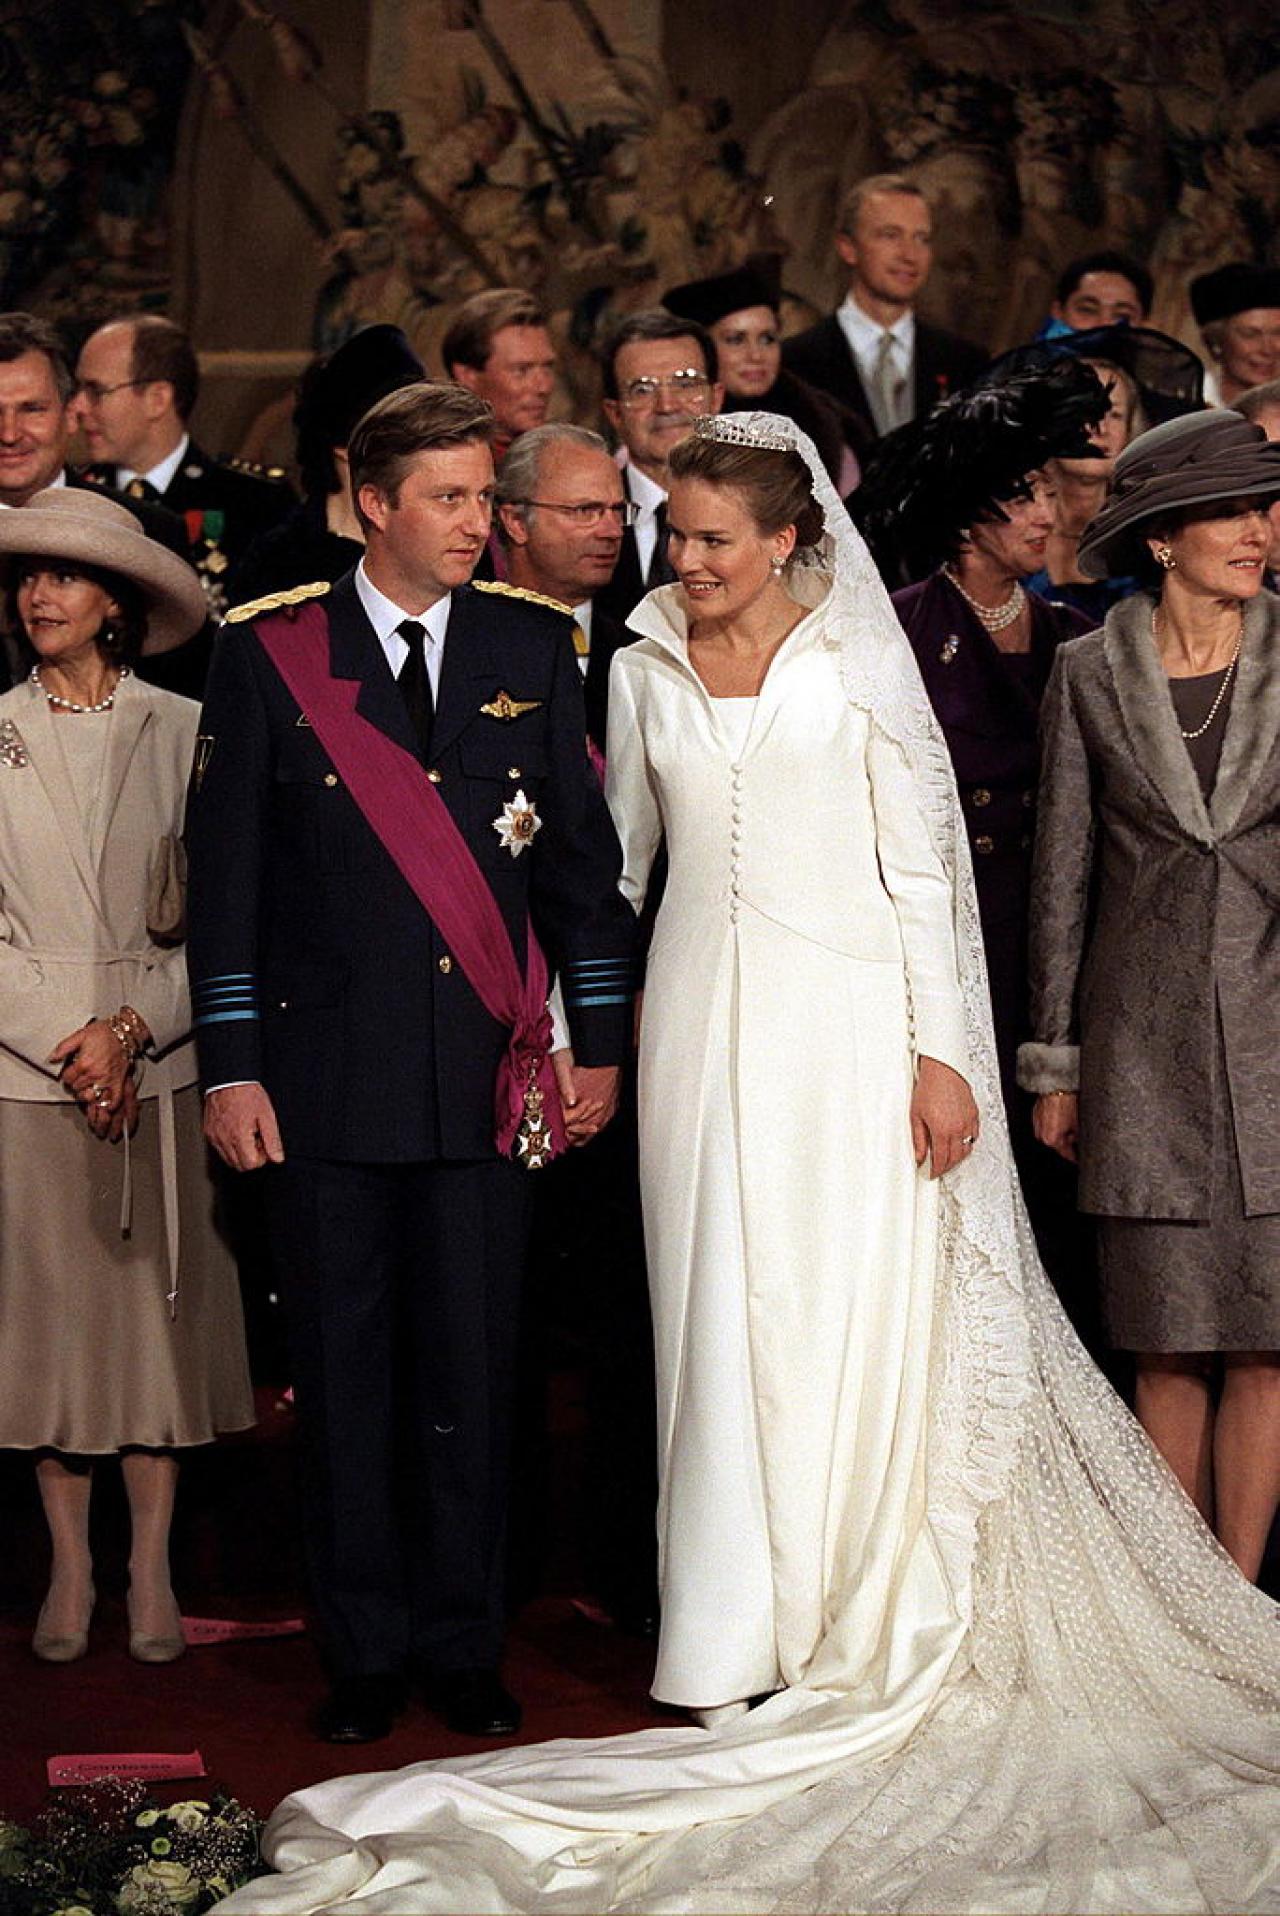 4 décembre 1999. Le mariage du Prince Philippe de Belgique et de Mlle Mathilde d'Udekem d'Acoz.